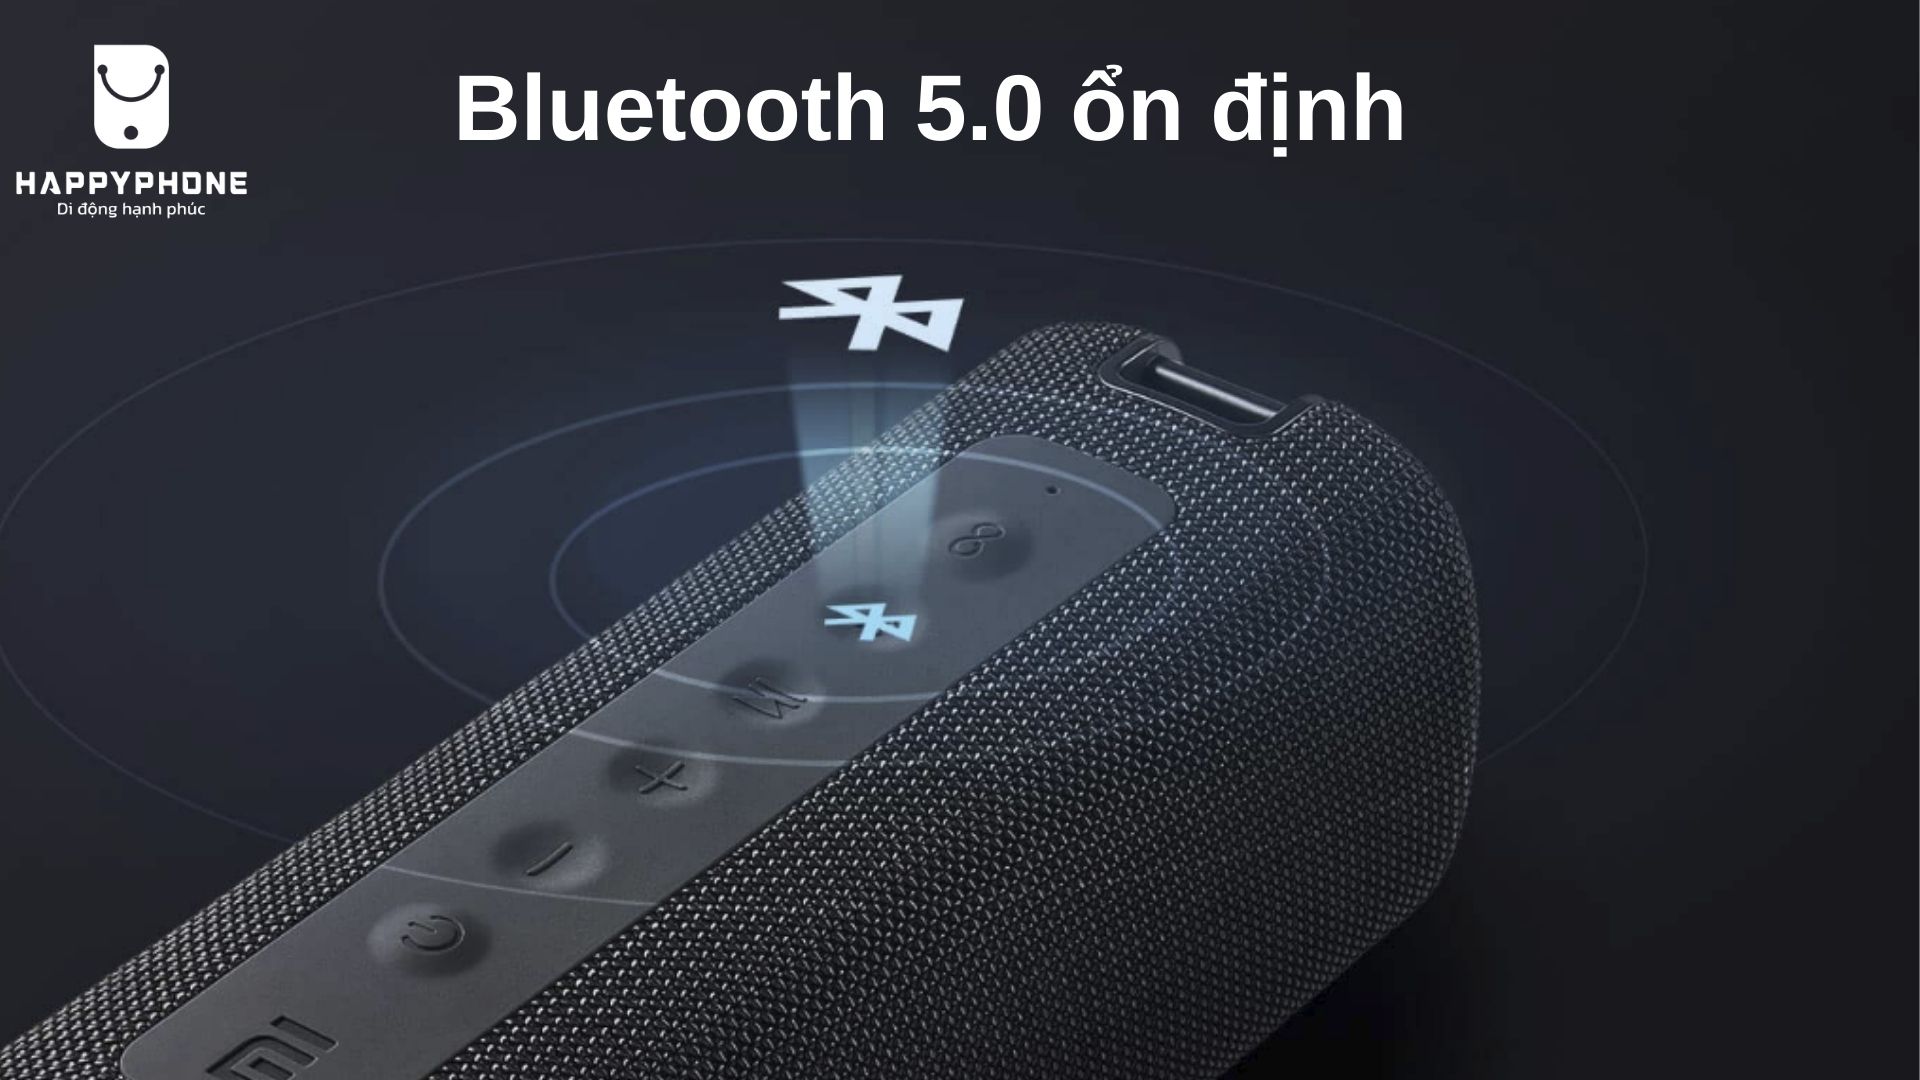 Mi Portable Bluetooth Speaker Bluetooth 5.0 Kết nối ổn định